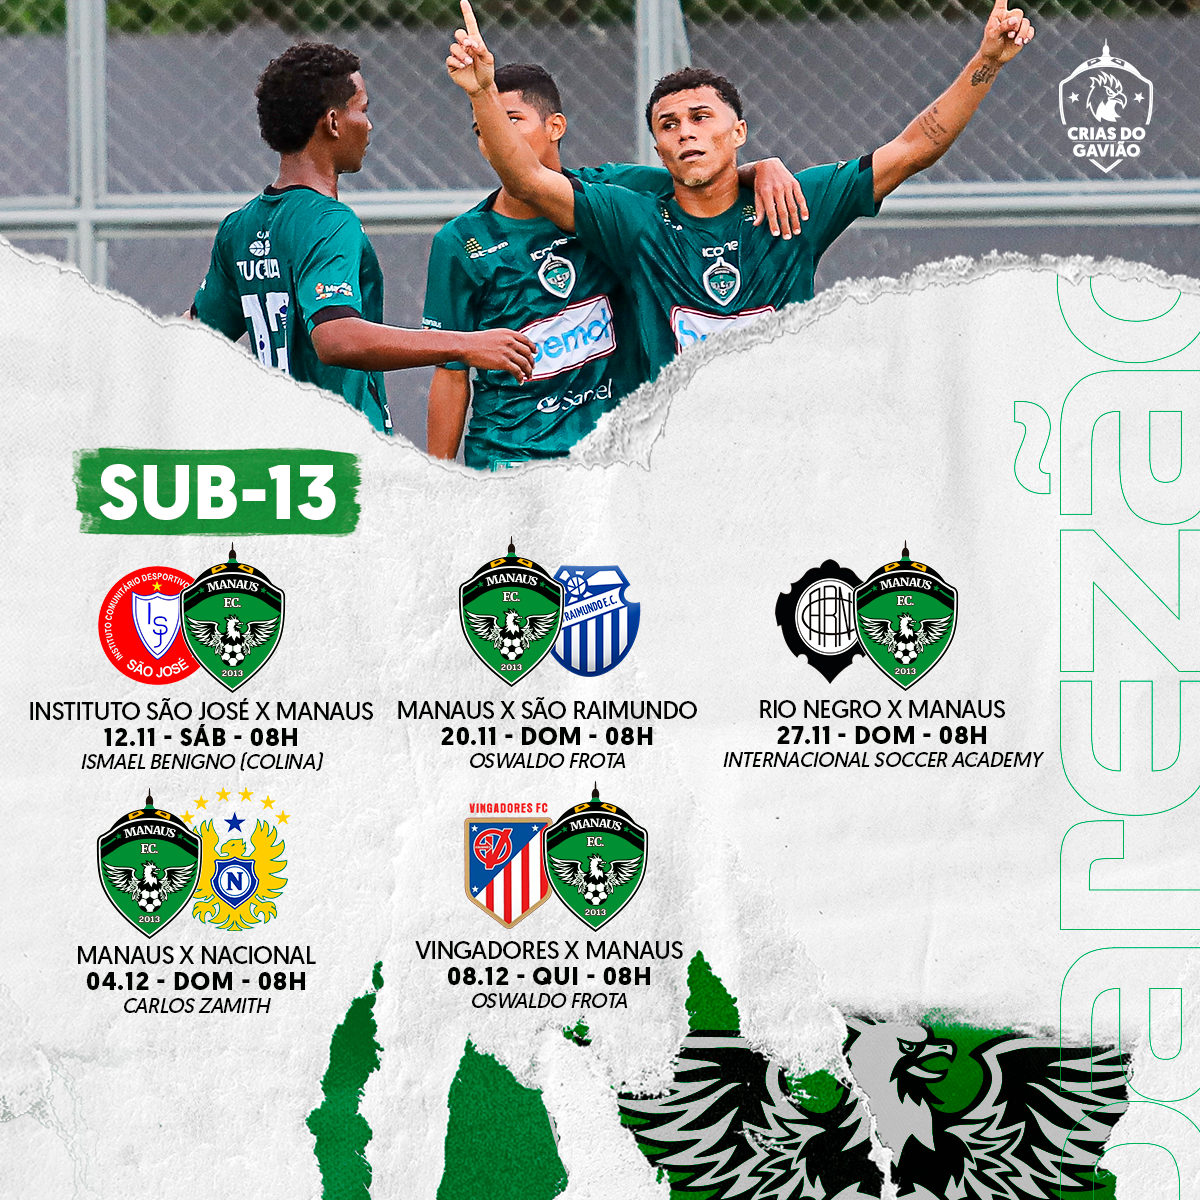 Manaus FC disputa as divisões de base do Campeonato Amazonense 2022